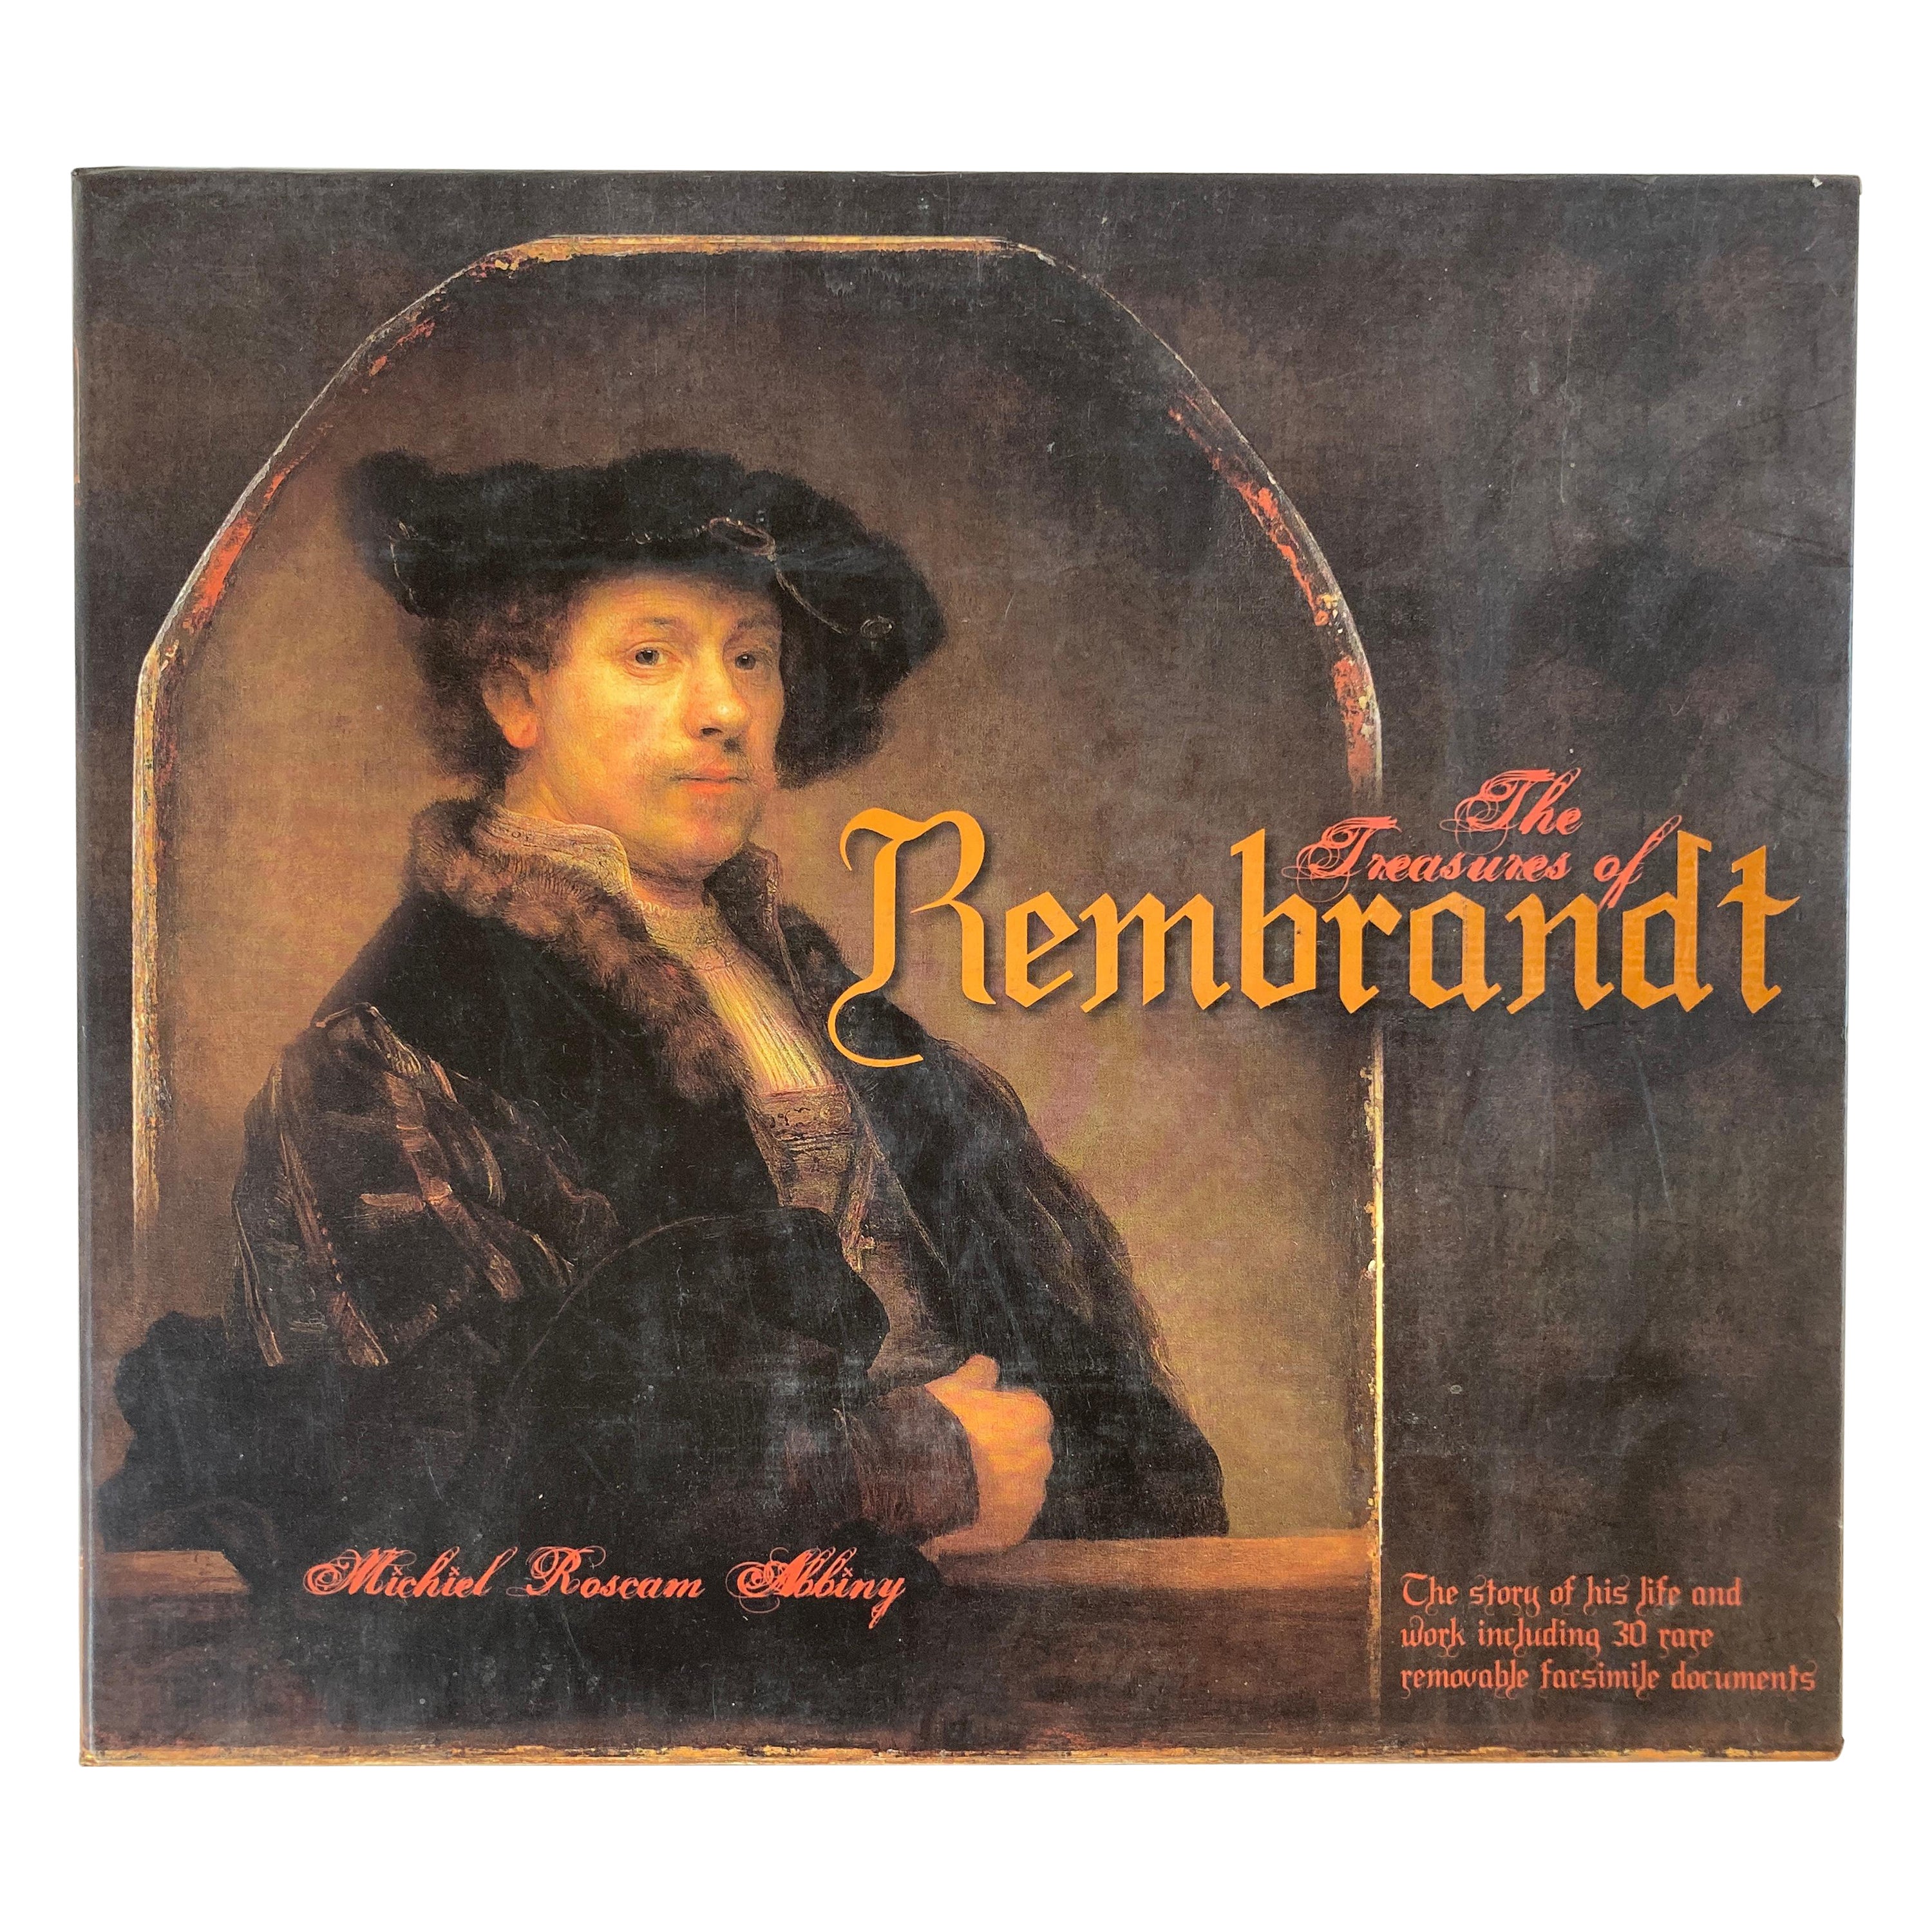 Los Tesoros de Rembrandt Libro de Michiel Roscam Abbing Art Gallery Libro